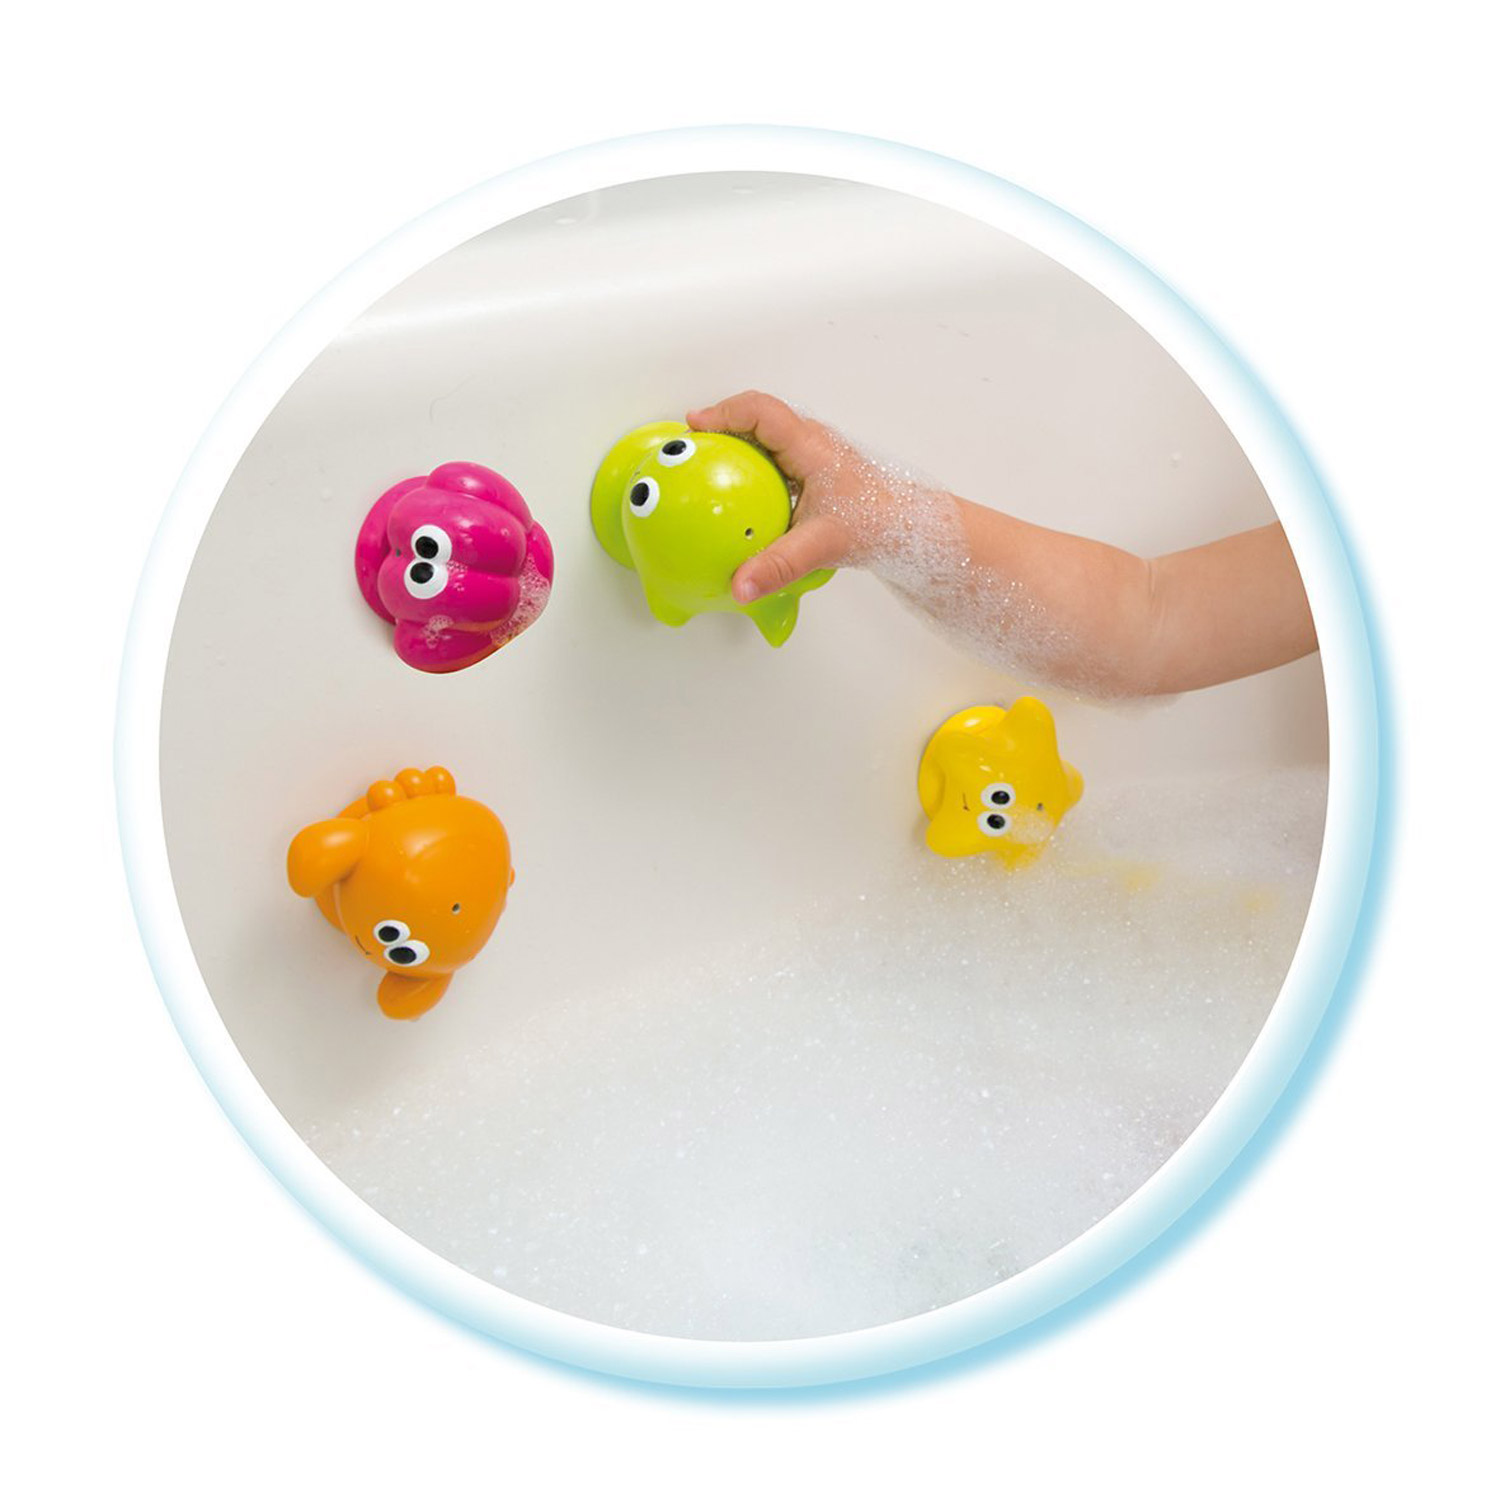 Купить игрушки для ванной. Игрушки Cotoons Smoby. Игрушка для ванной островок морских обитателей. Игрушки для ванной для детей. Игрушки для купания на присосках.